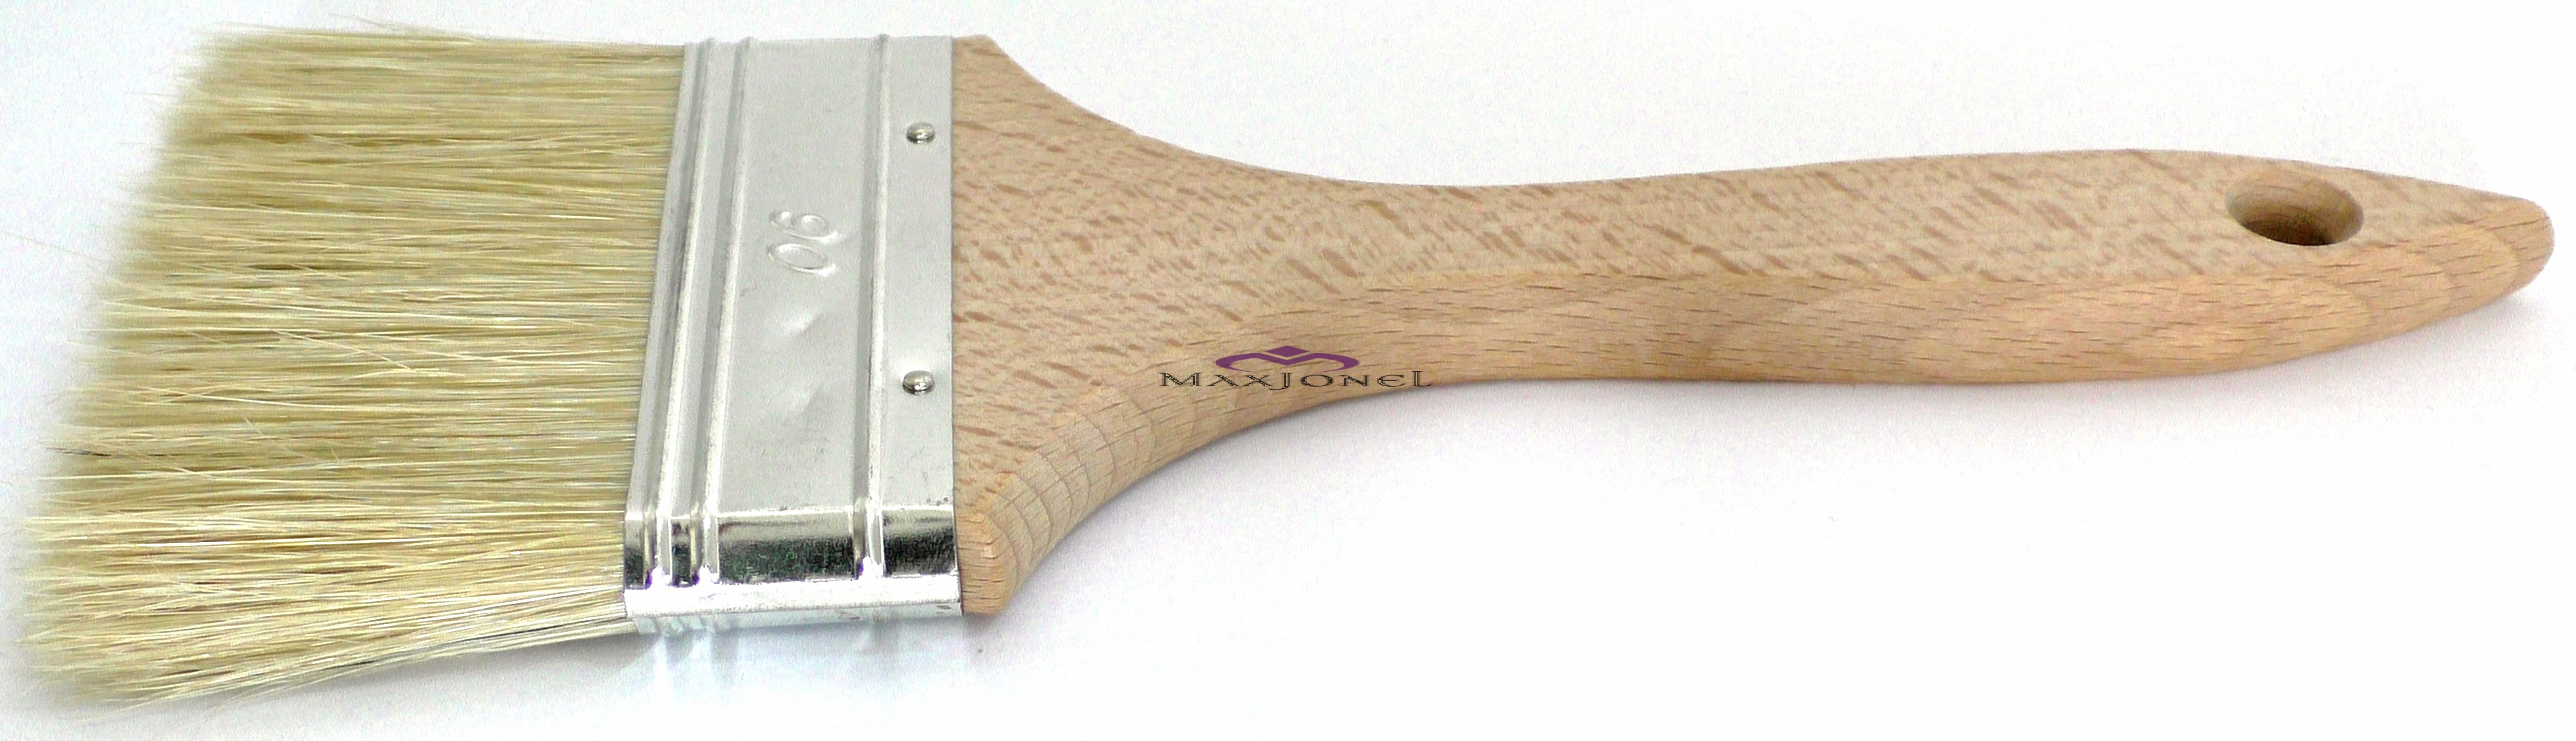 Pensula maner lemn - fir natural 90 mm